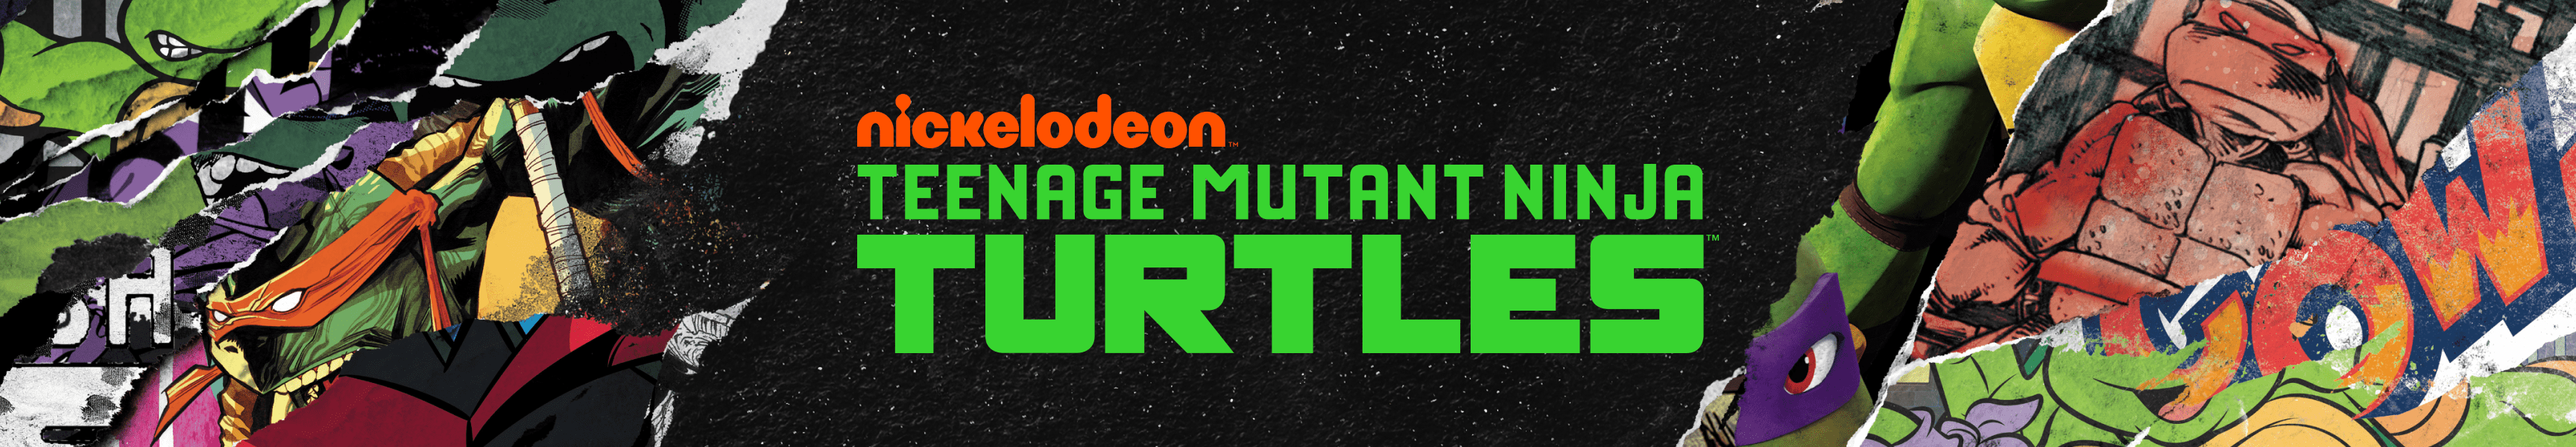 Teenage Mutant Ninja Turtles Los más vendidos